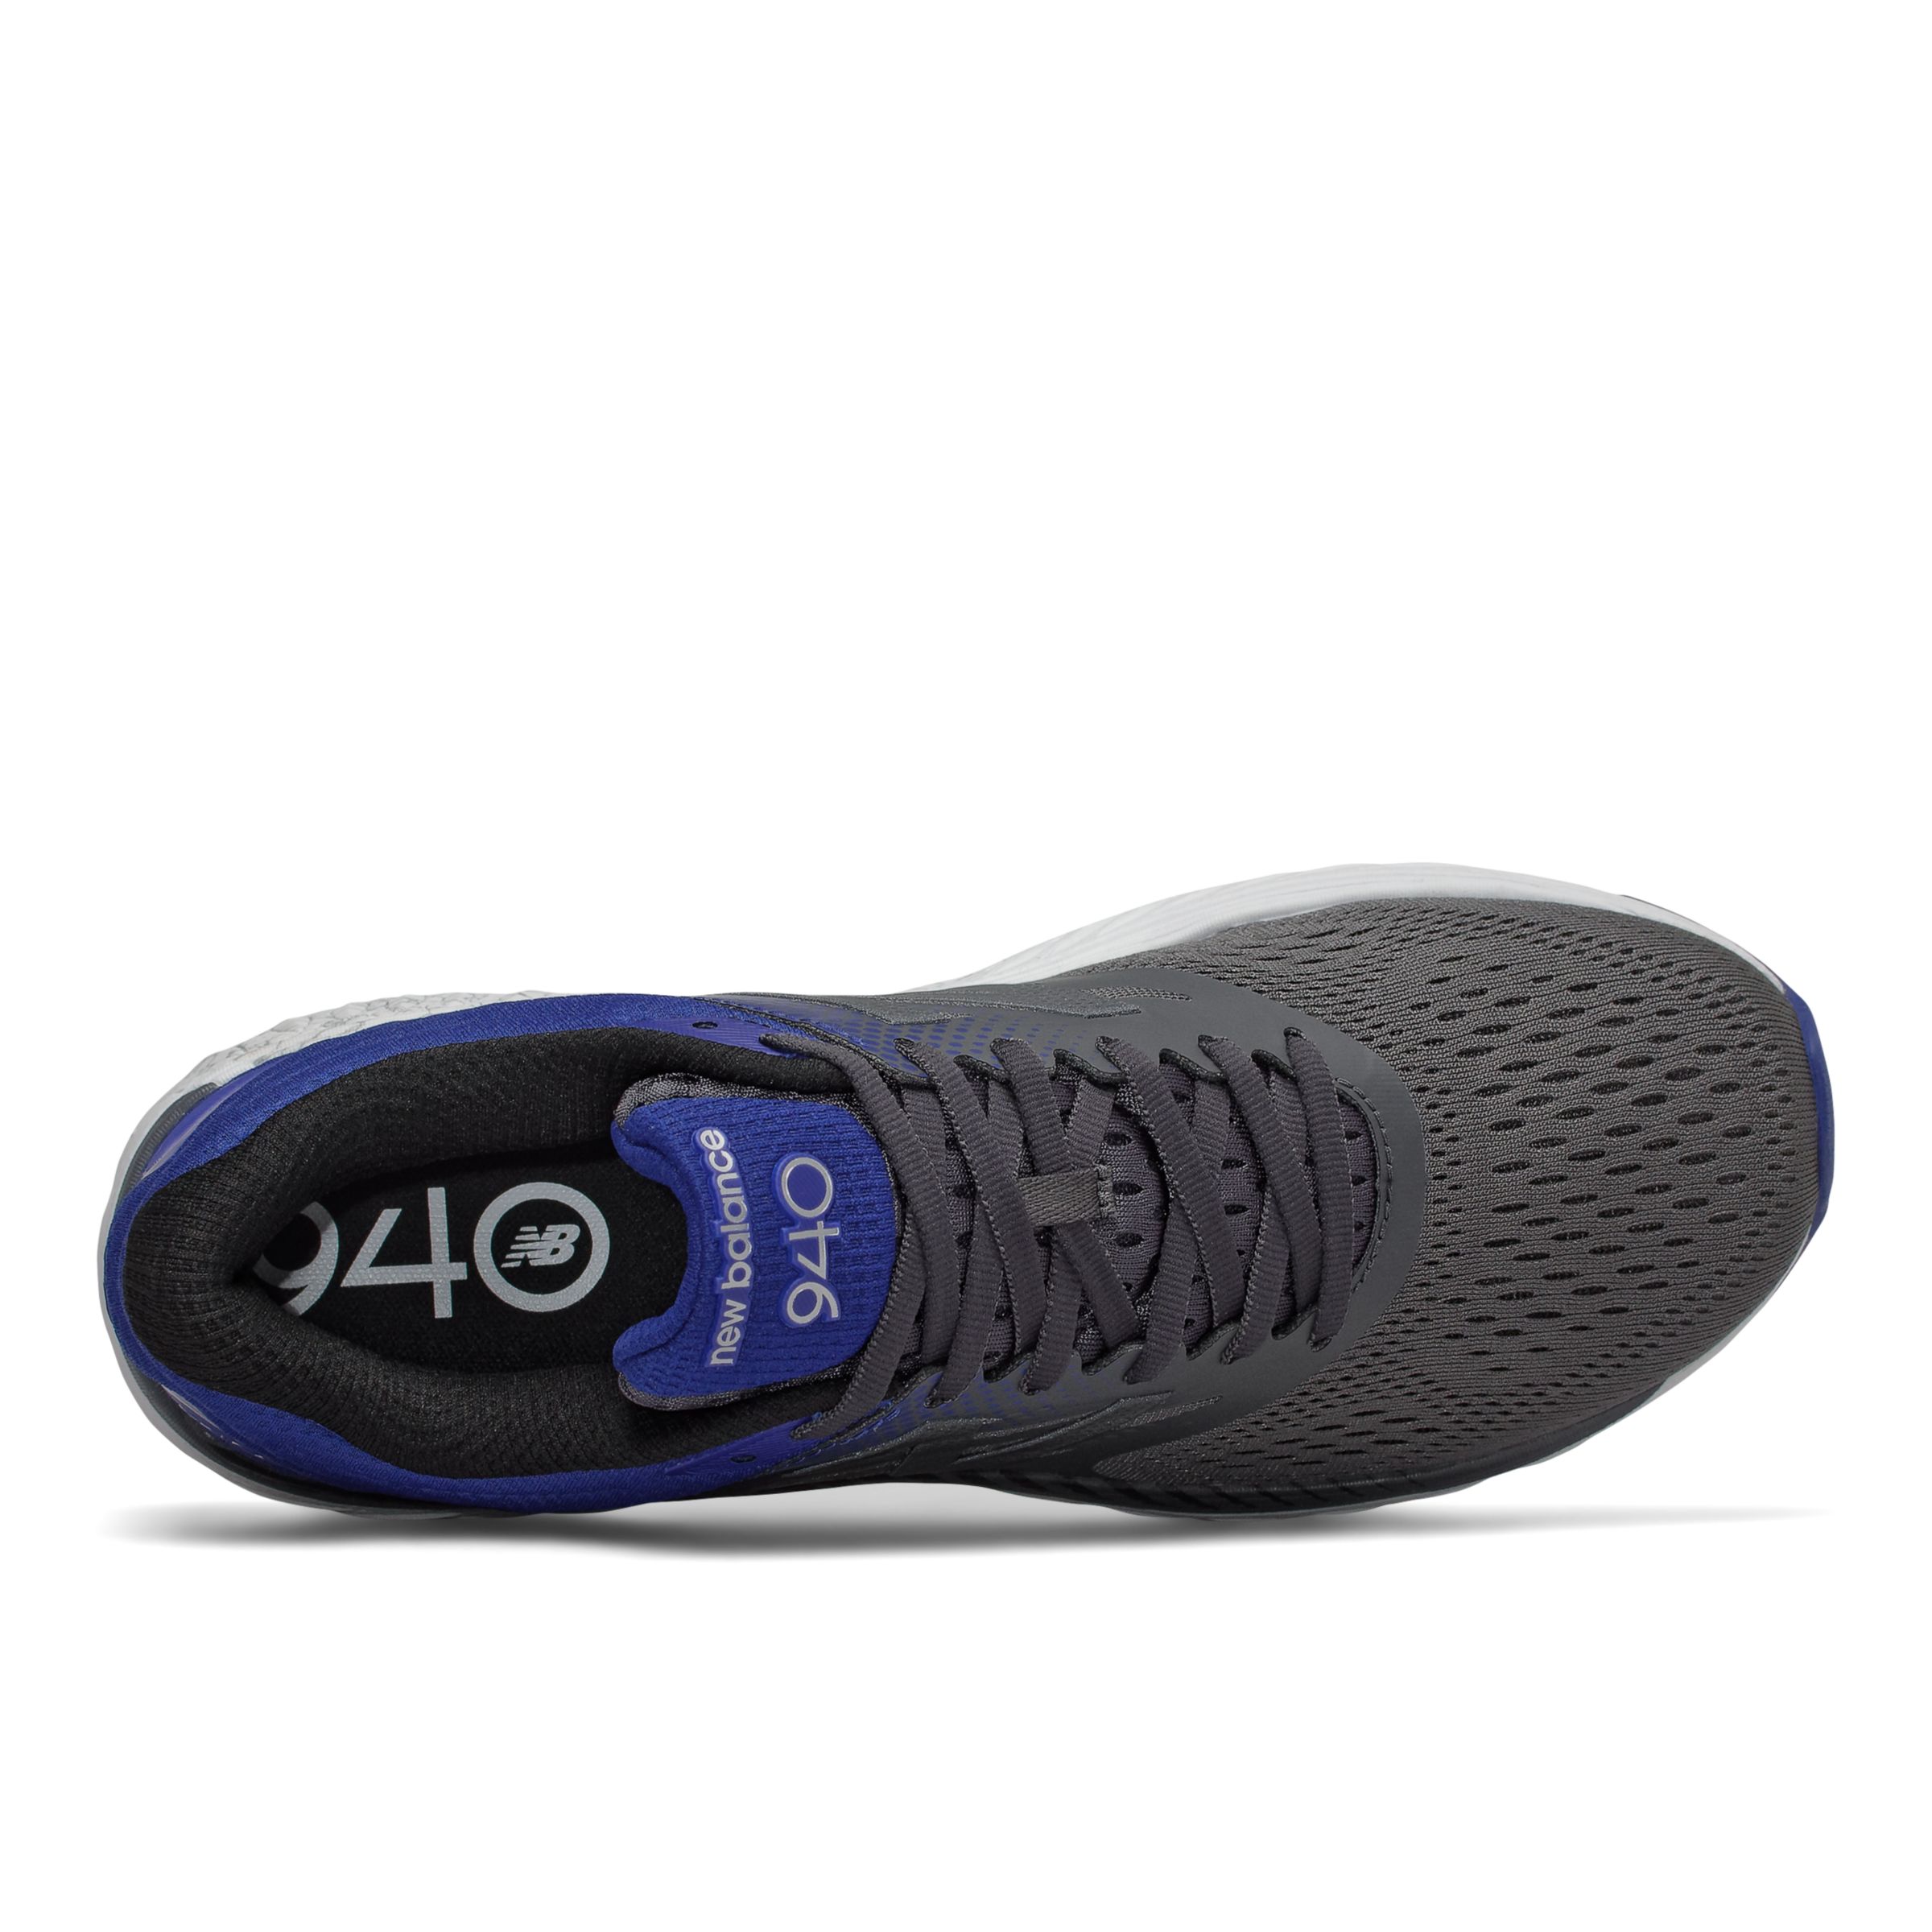 new balance men's m940v2 running shoe